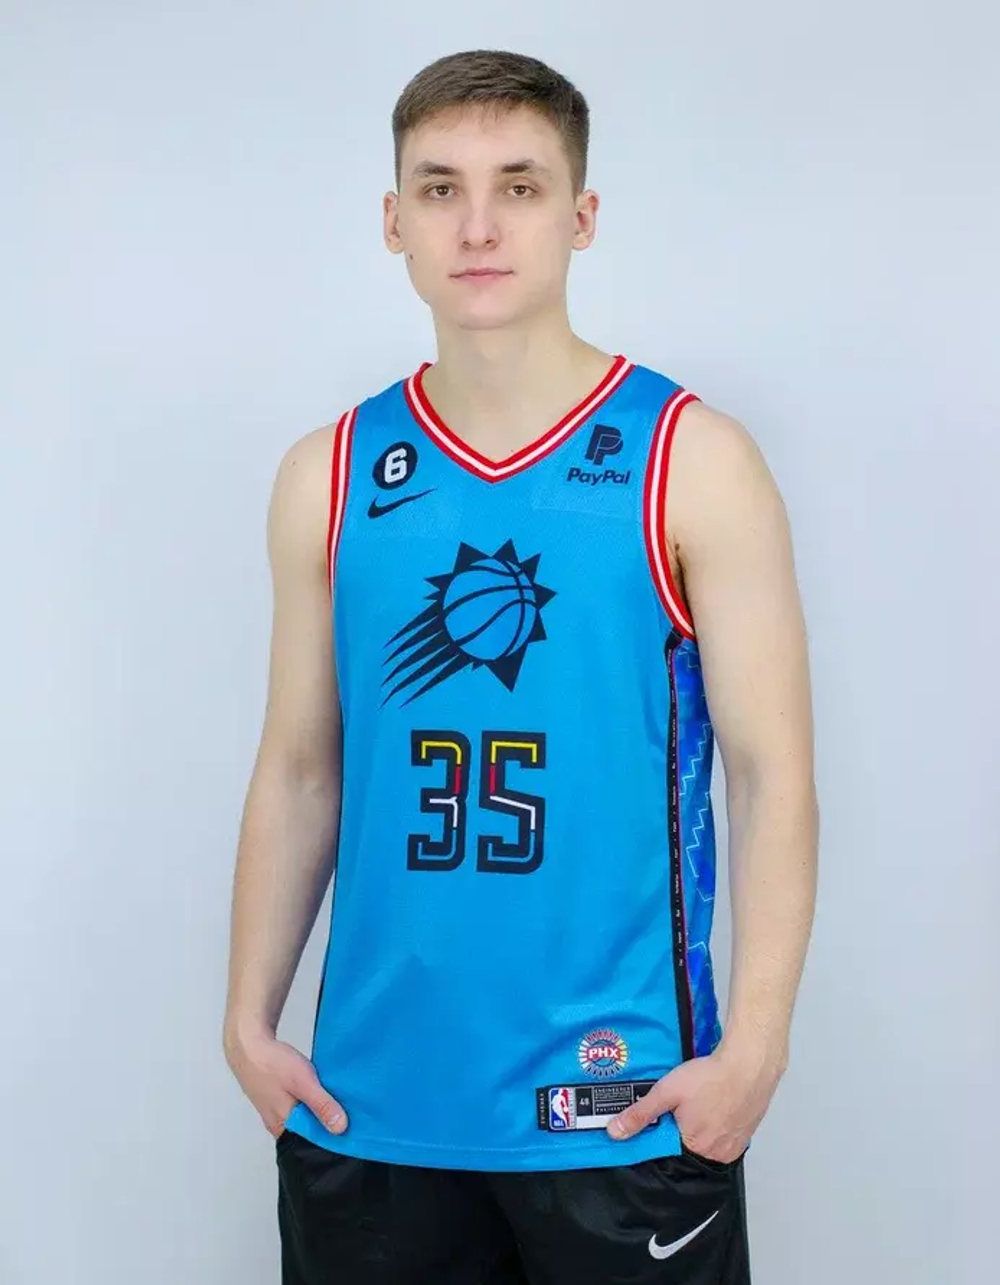 Купить в Москве баскетбольную джерси Кевина Дюрэнта «Финикс Санз»